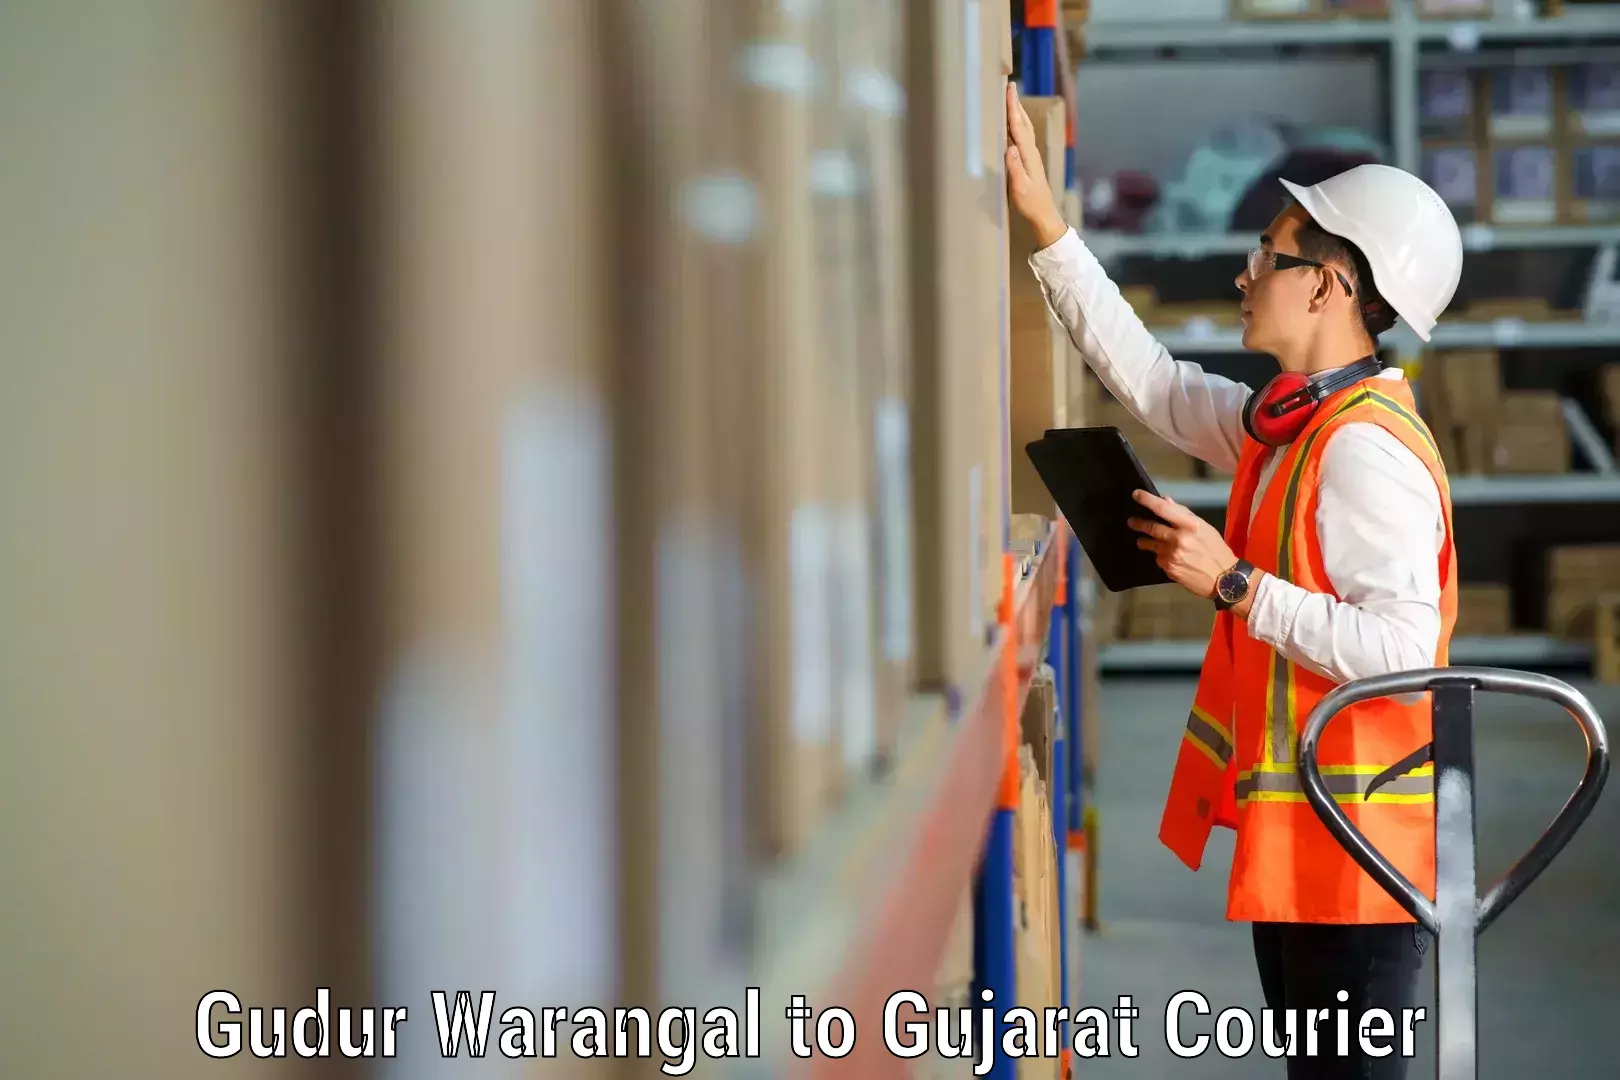 Furniture moving experts Gudur Warangal to GIDC